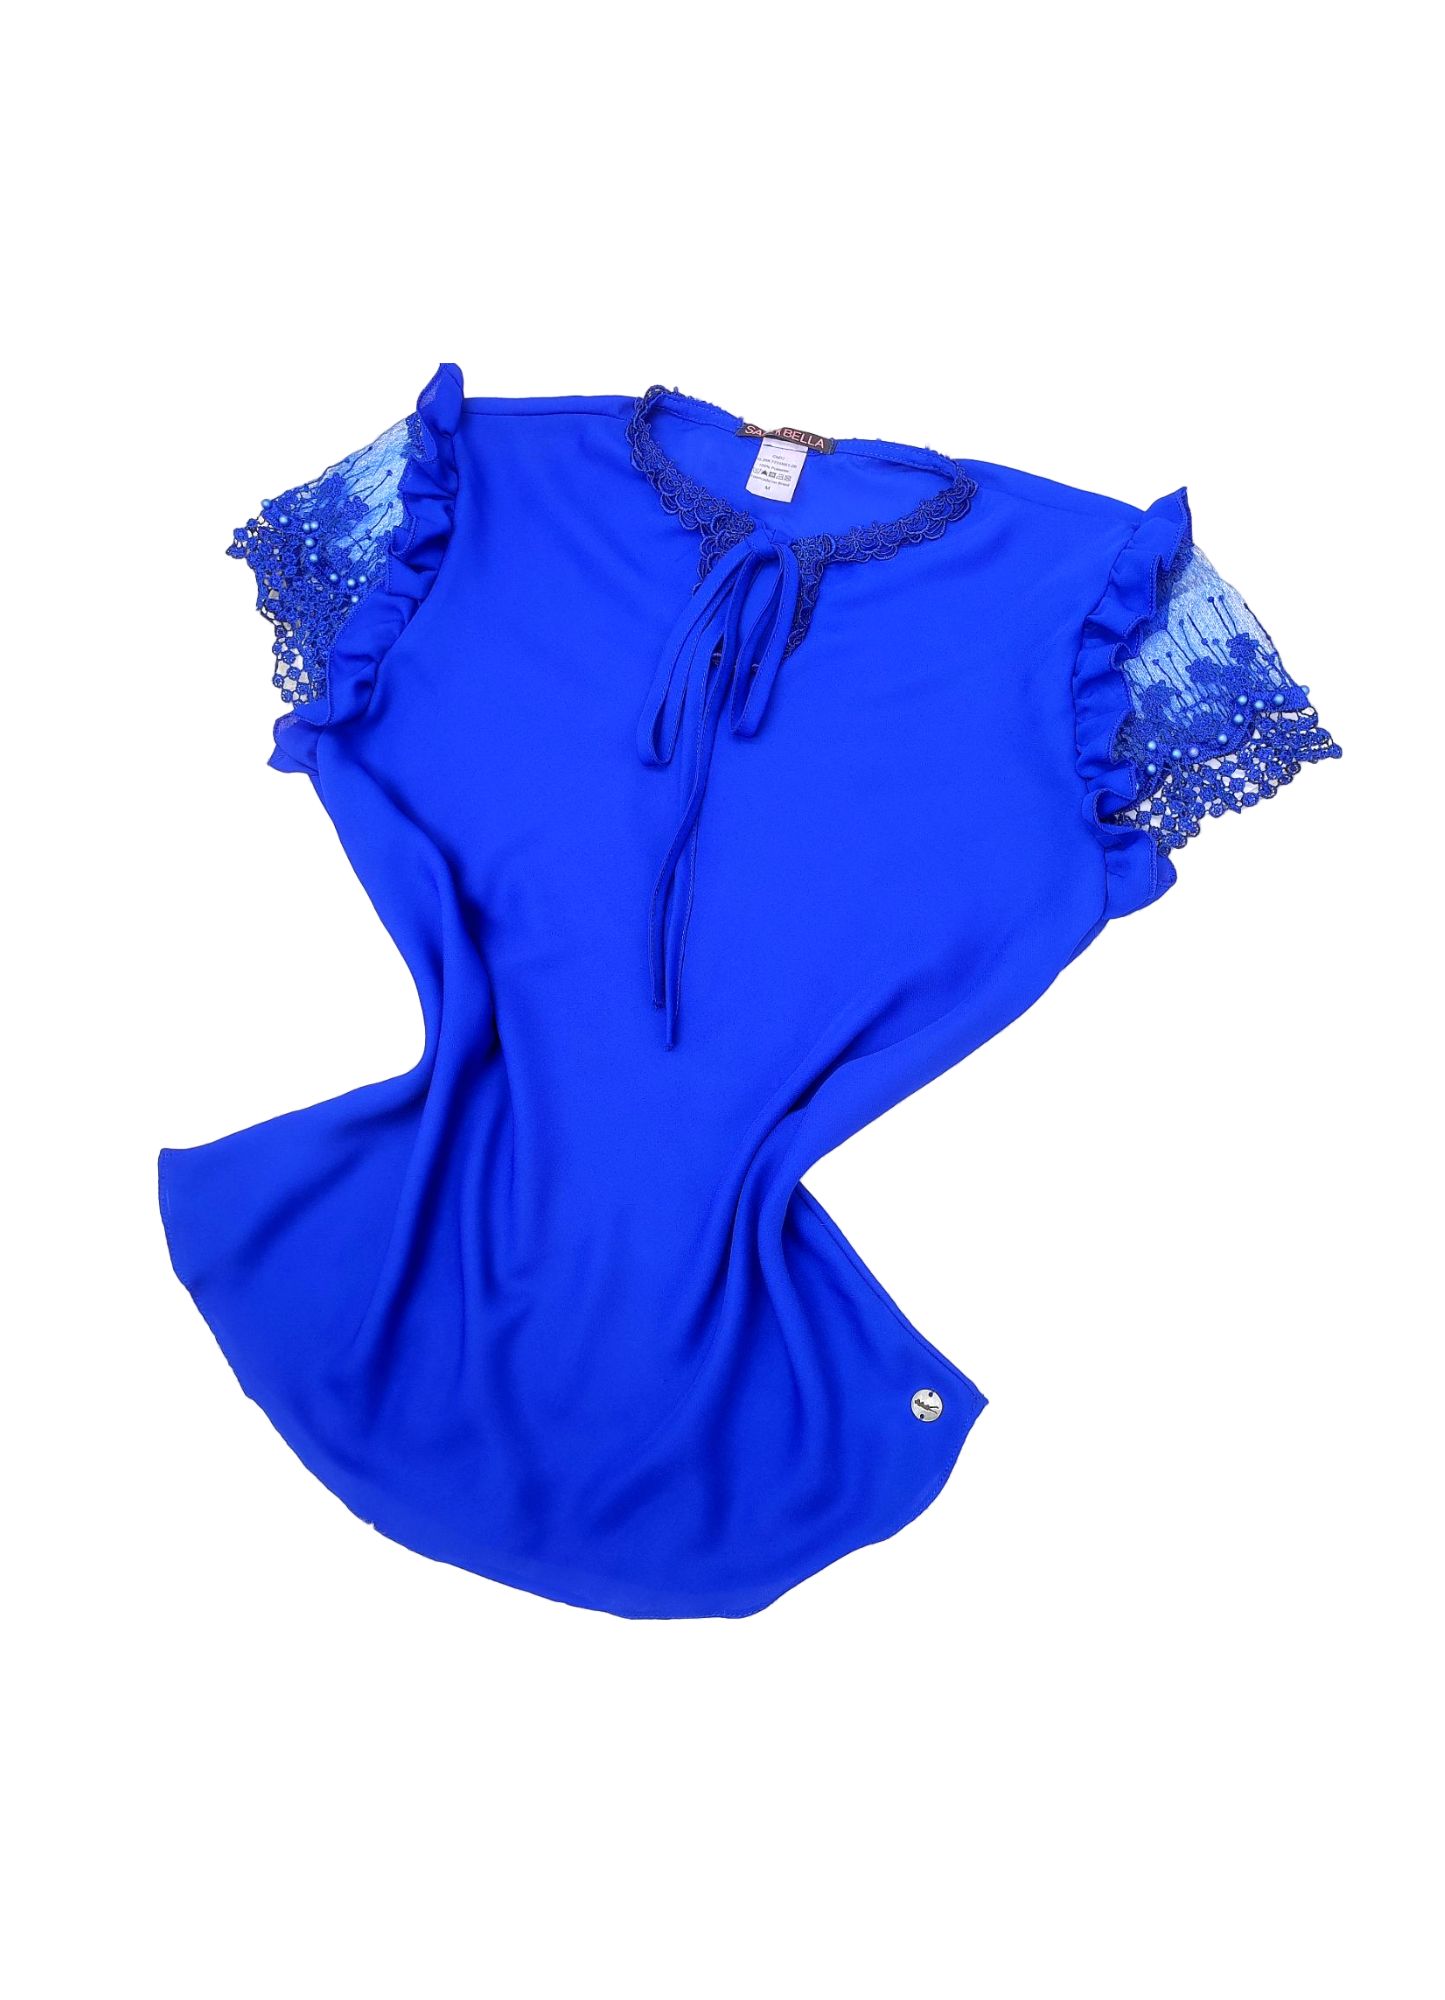 Blusa Eloá SB0005 - Azul Royal